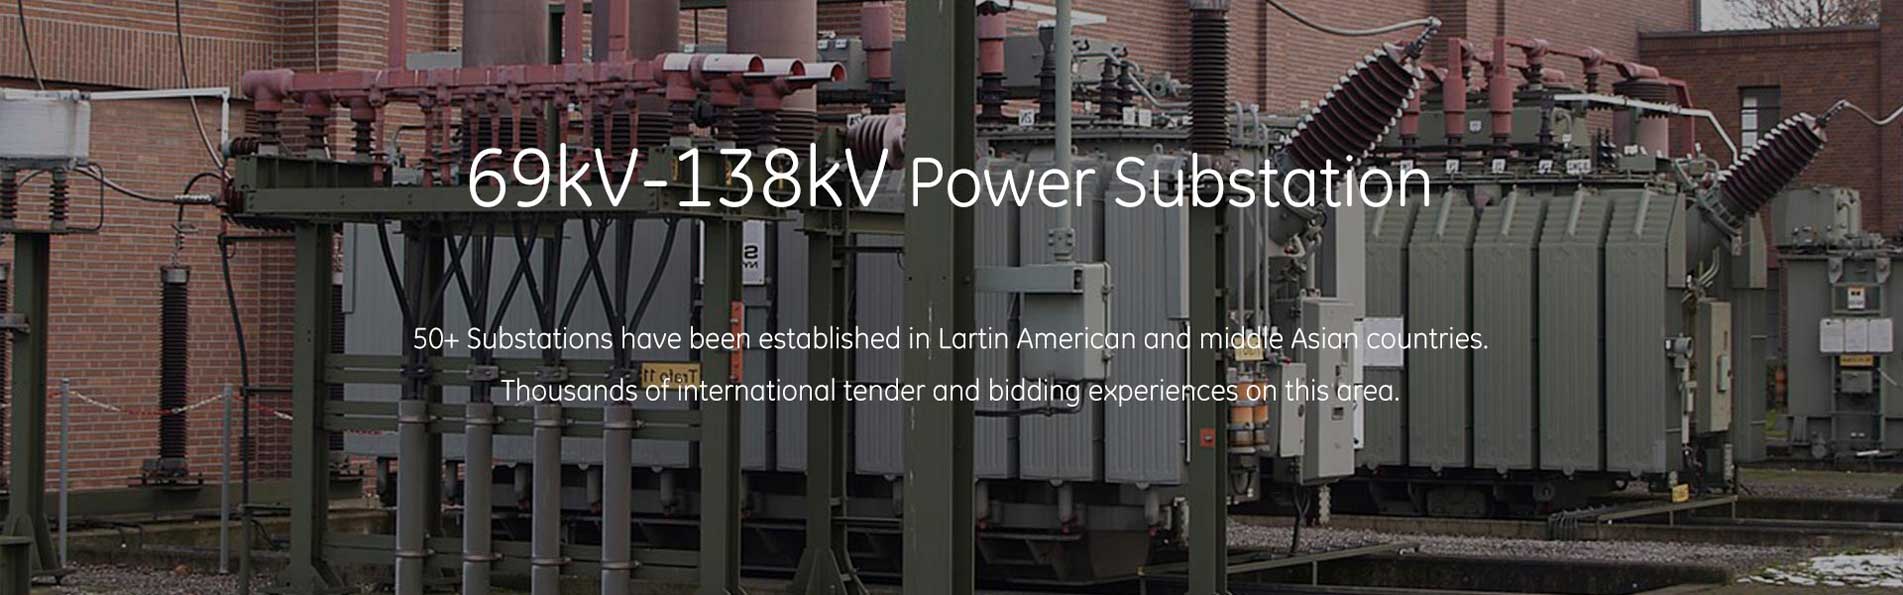 69kv-138kv power substation